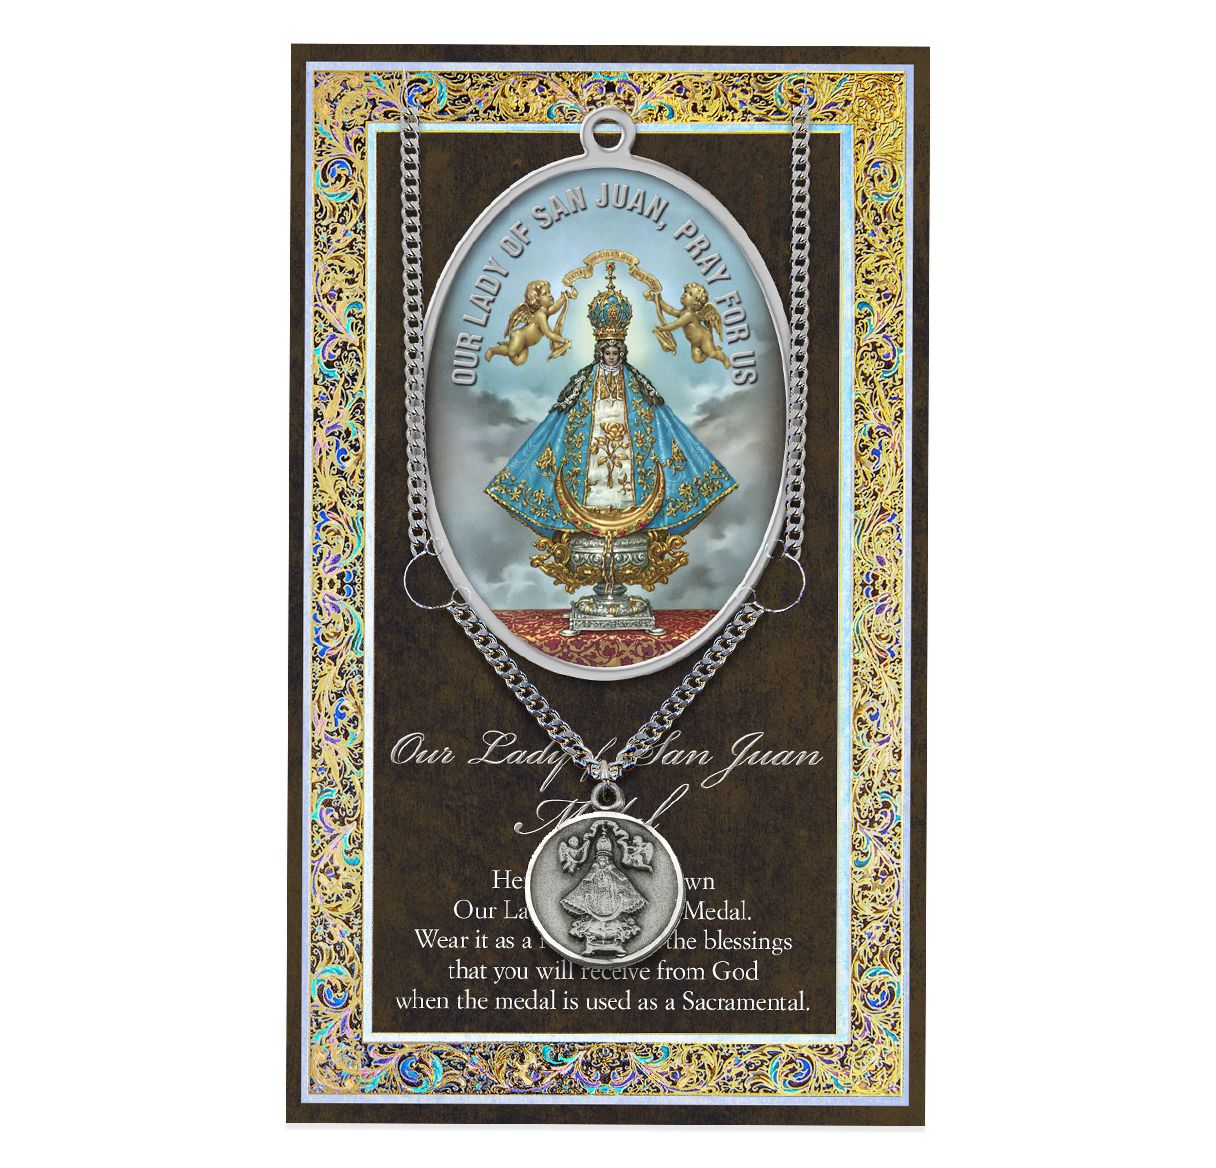 San Juan Biography Folder and Patron Saint Medal